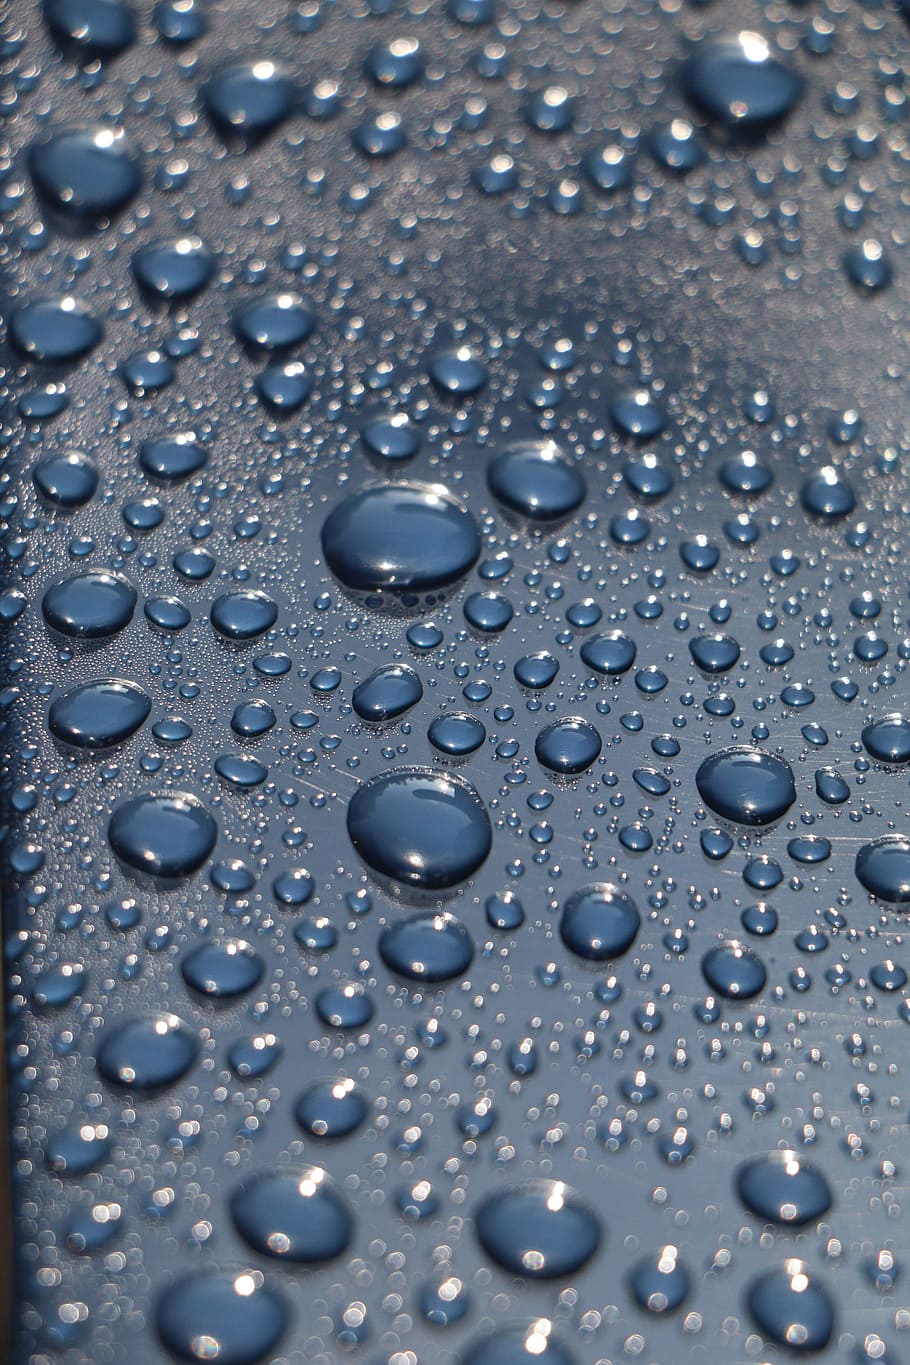 Картинка капли дождя. Капли. Капля воды. Капли дождя. Красивые капельки воды.